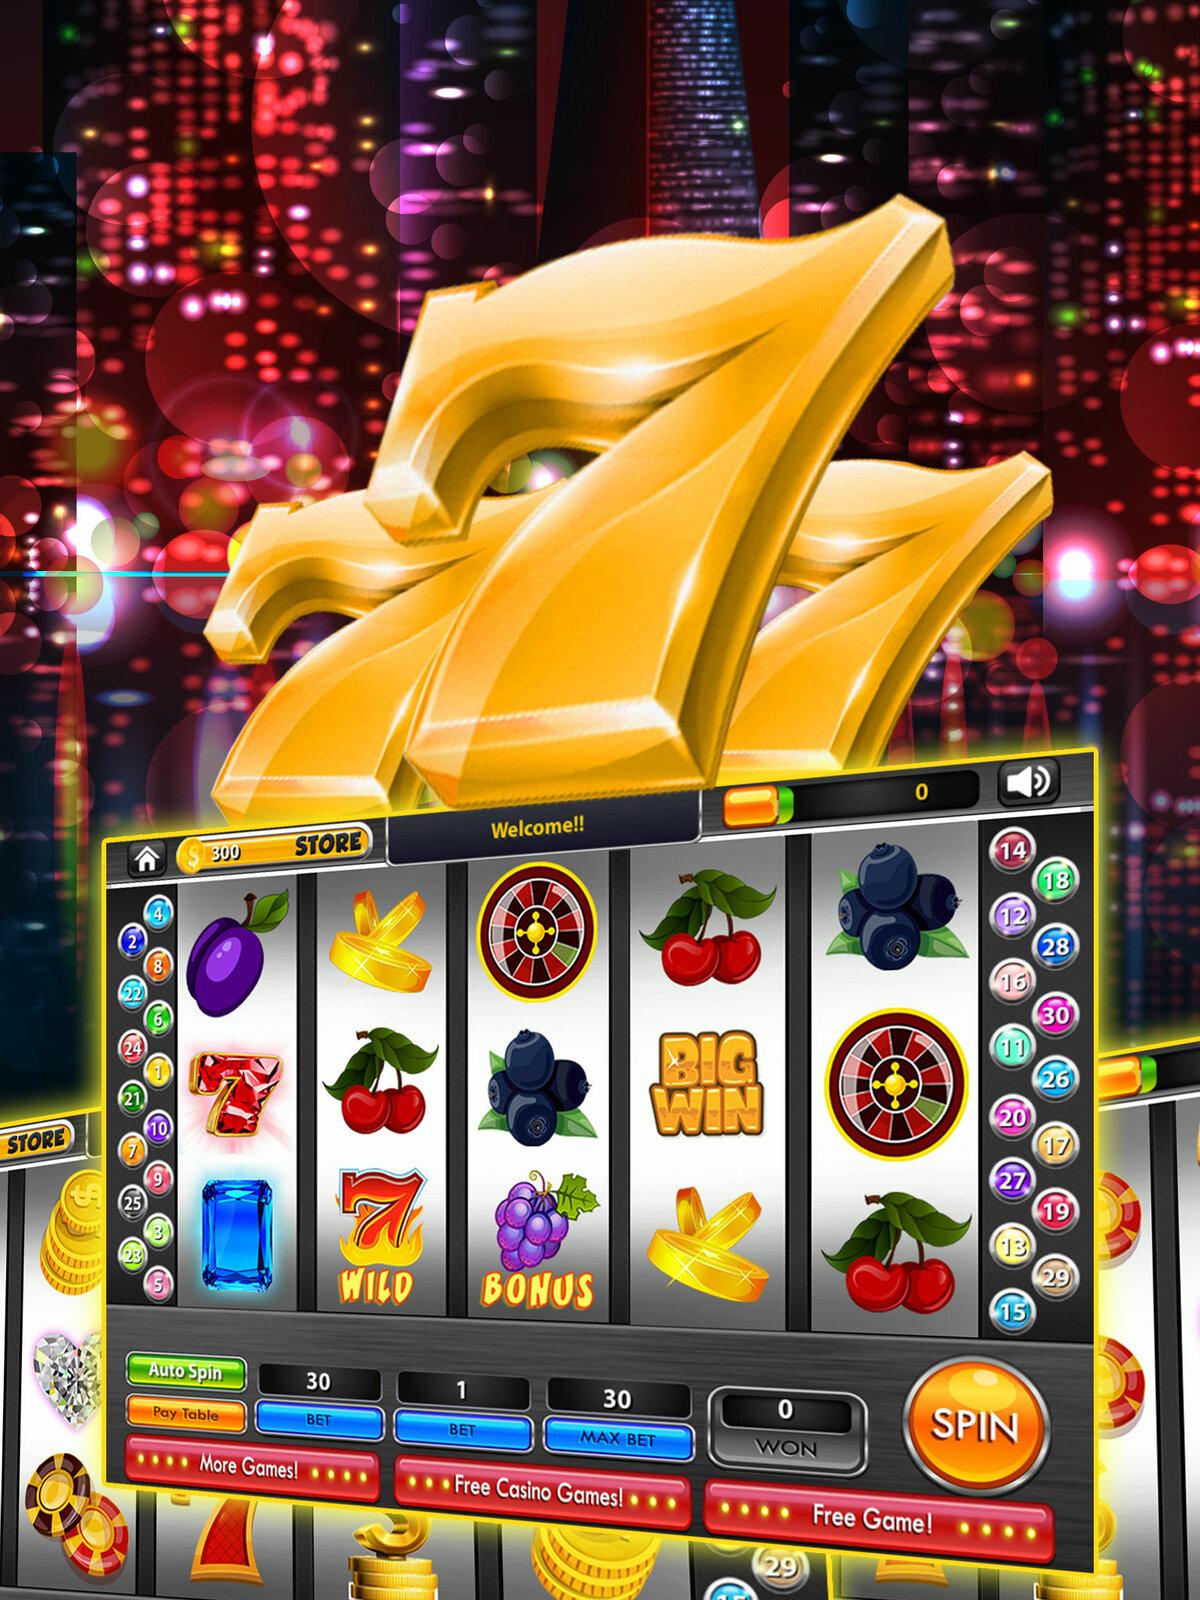 Гомона Казино Gama Casino официальный сайт диалоговый казино